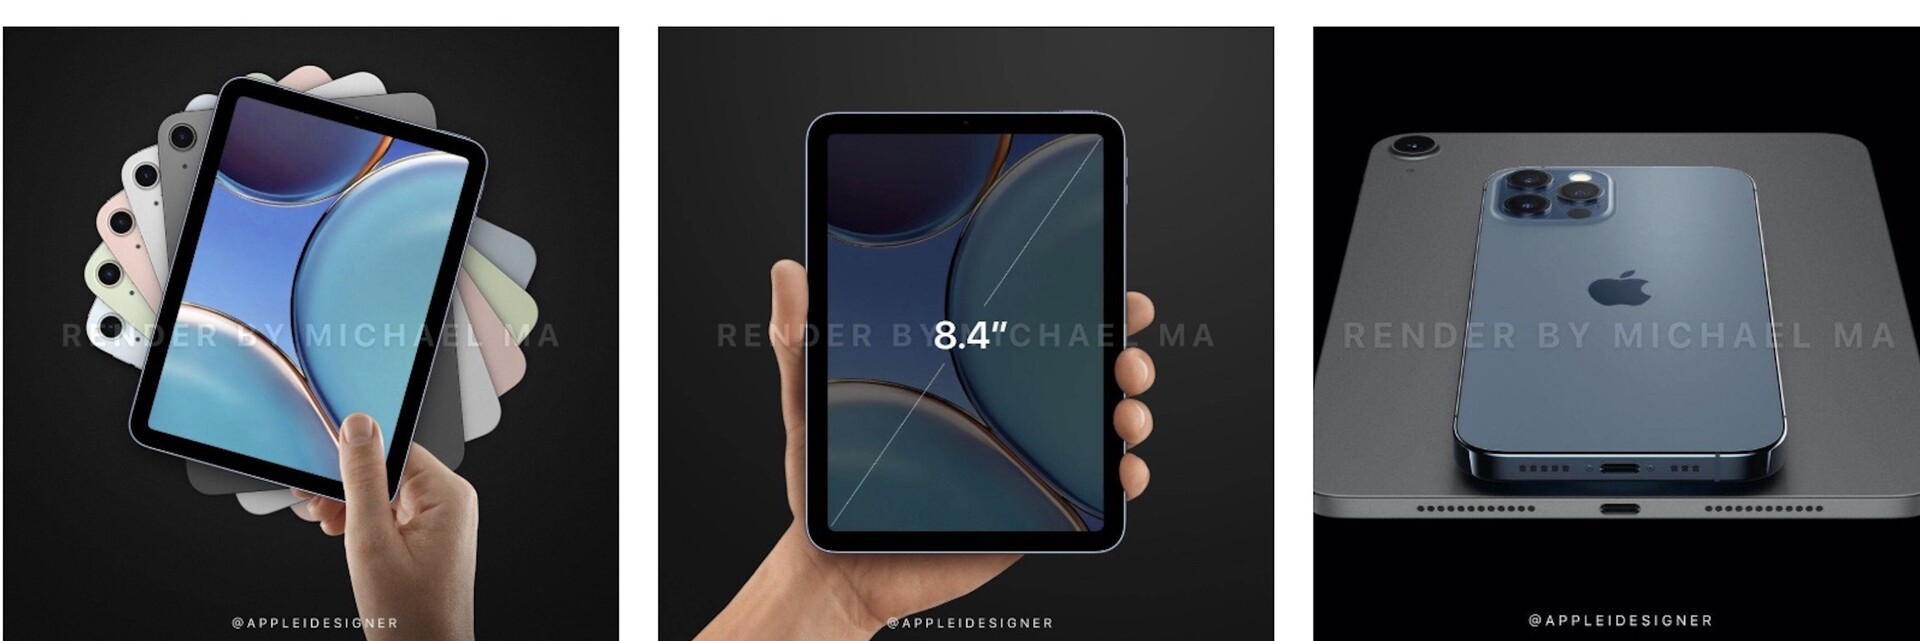 苹果资讯|重新设计的iPad mini ，配备更大的8.4英寸Liquid Retina显示屏 